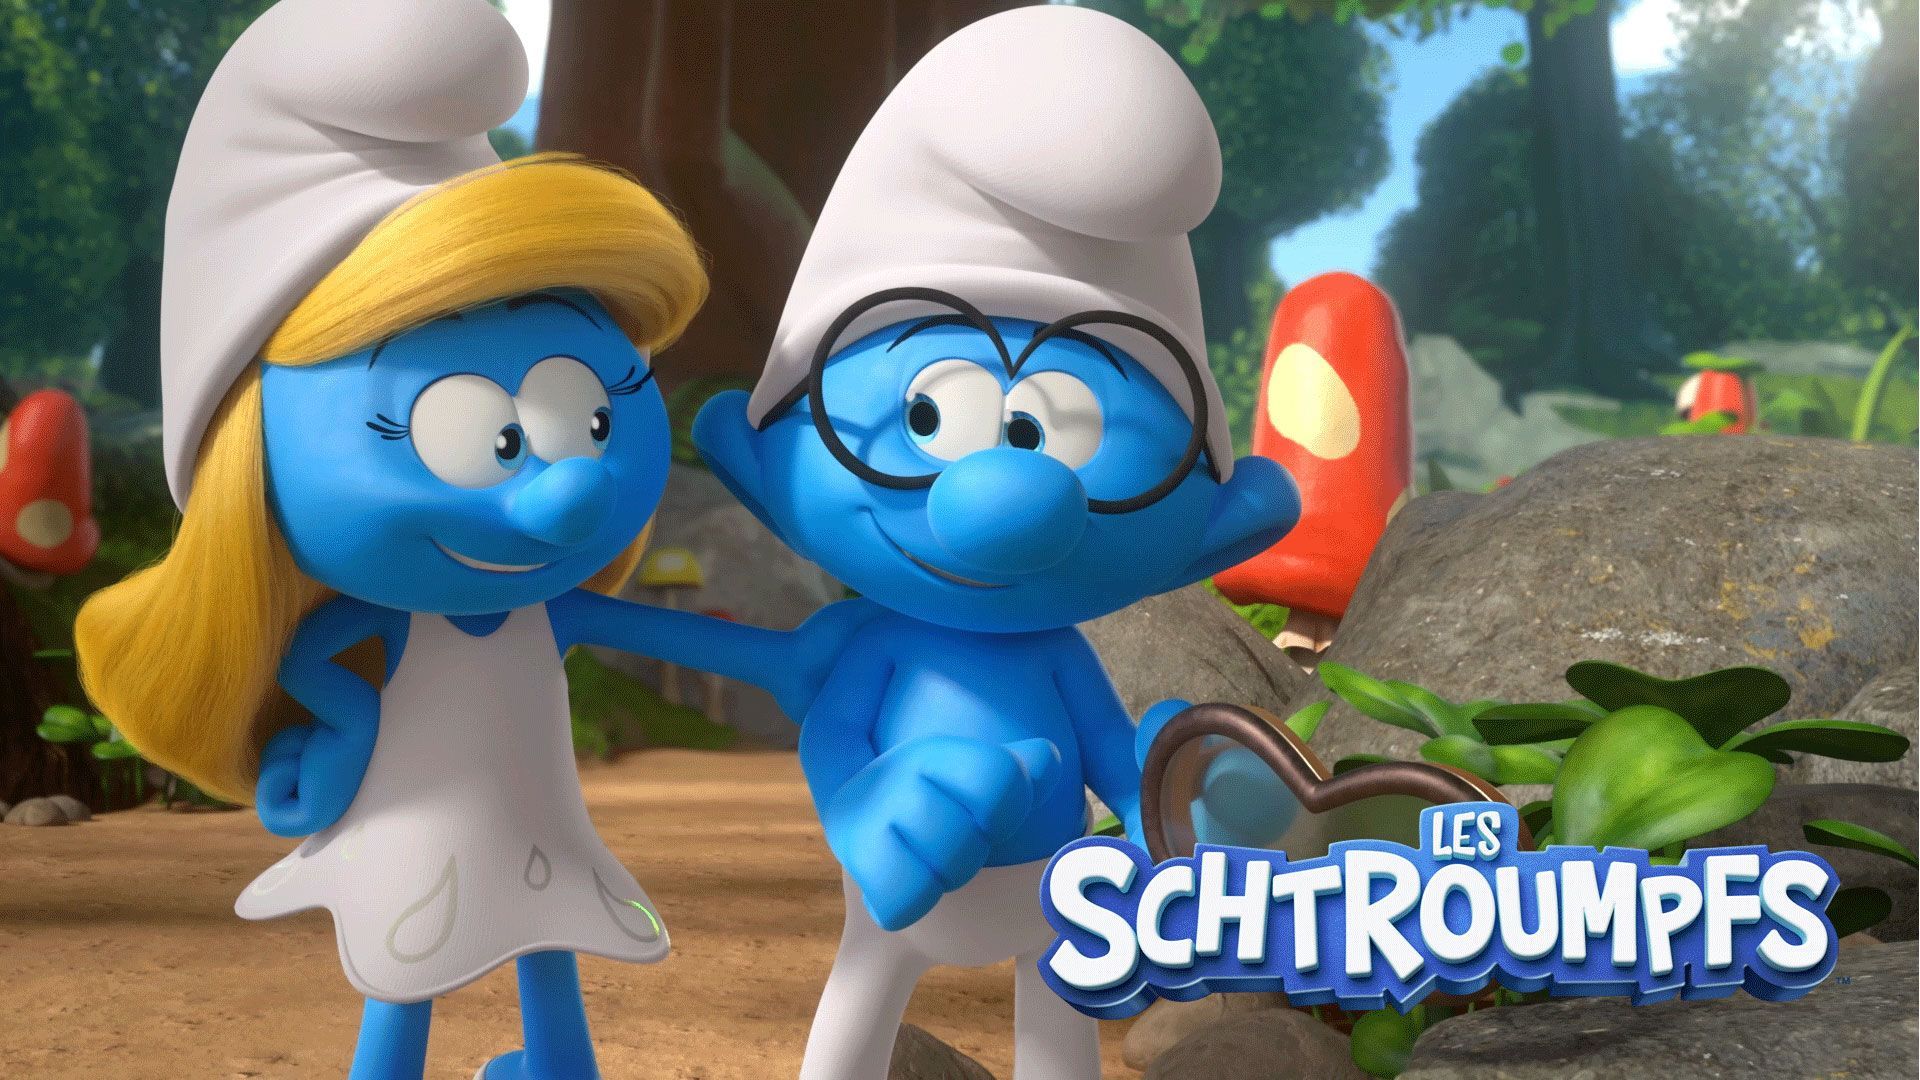 La nouvelle série en 3D "Les Schtroumpfs" débarque sur OUFtivi !